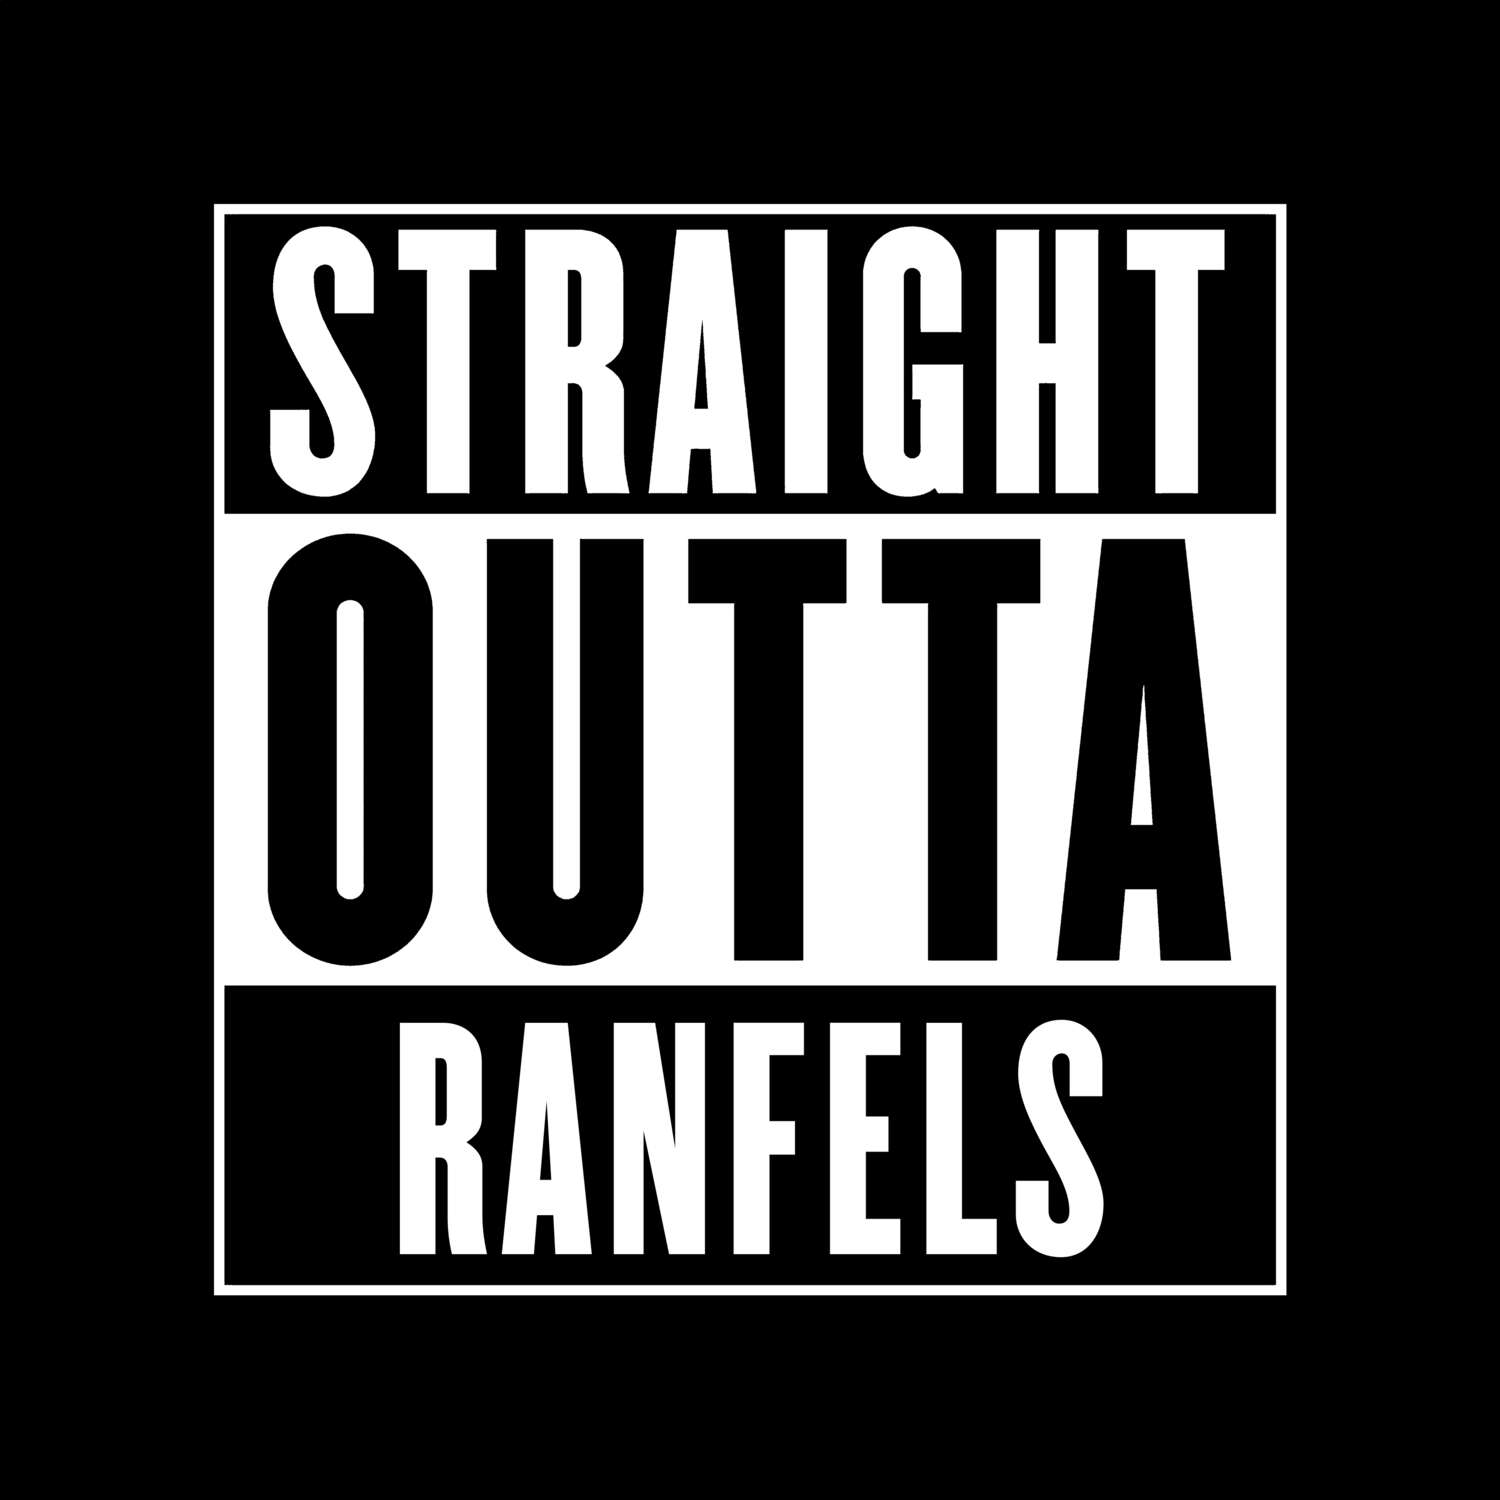 Ranfels T-Shirt »Straight Outta«